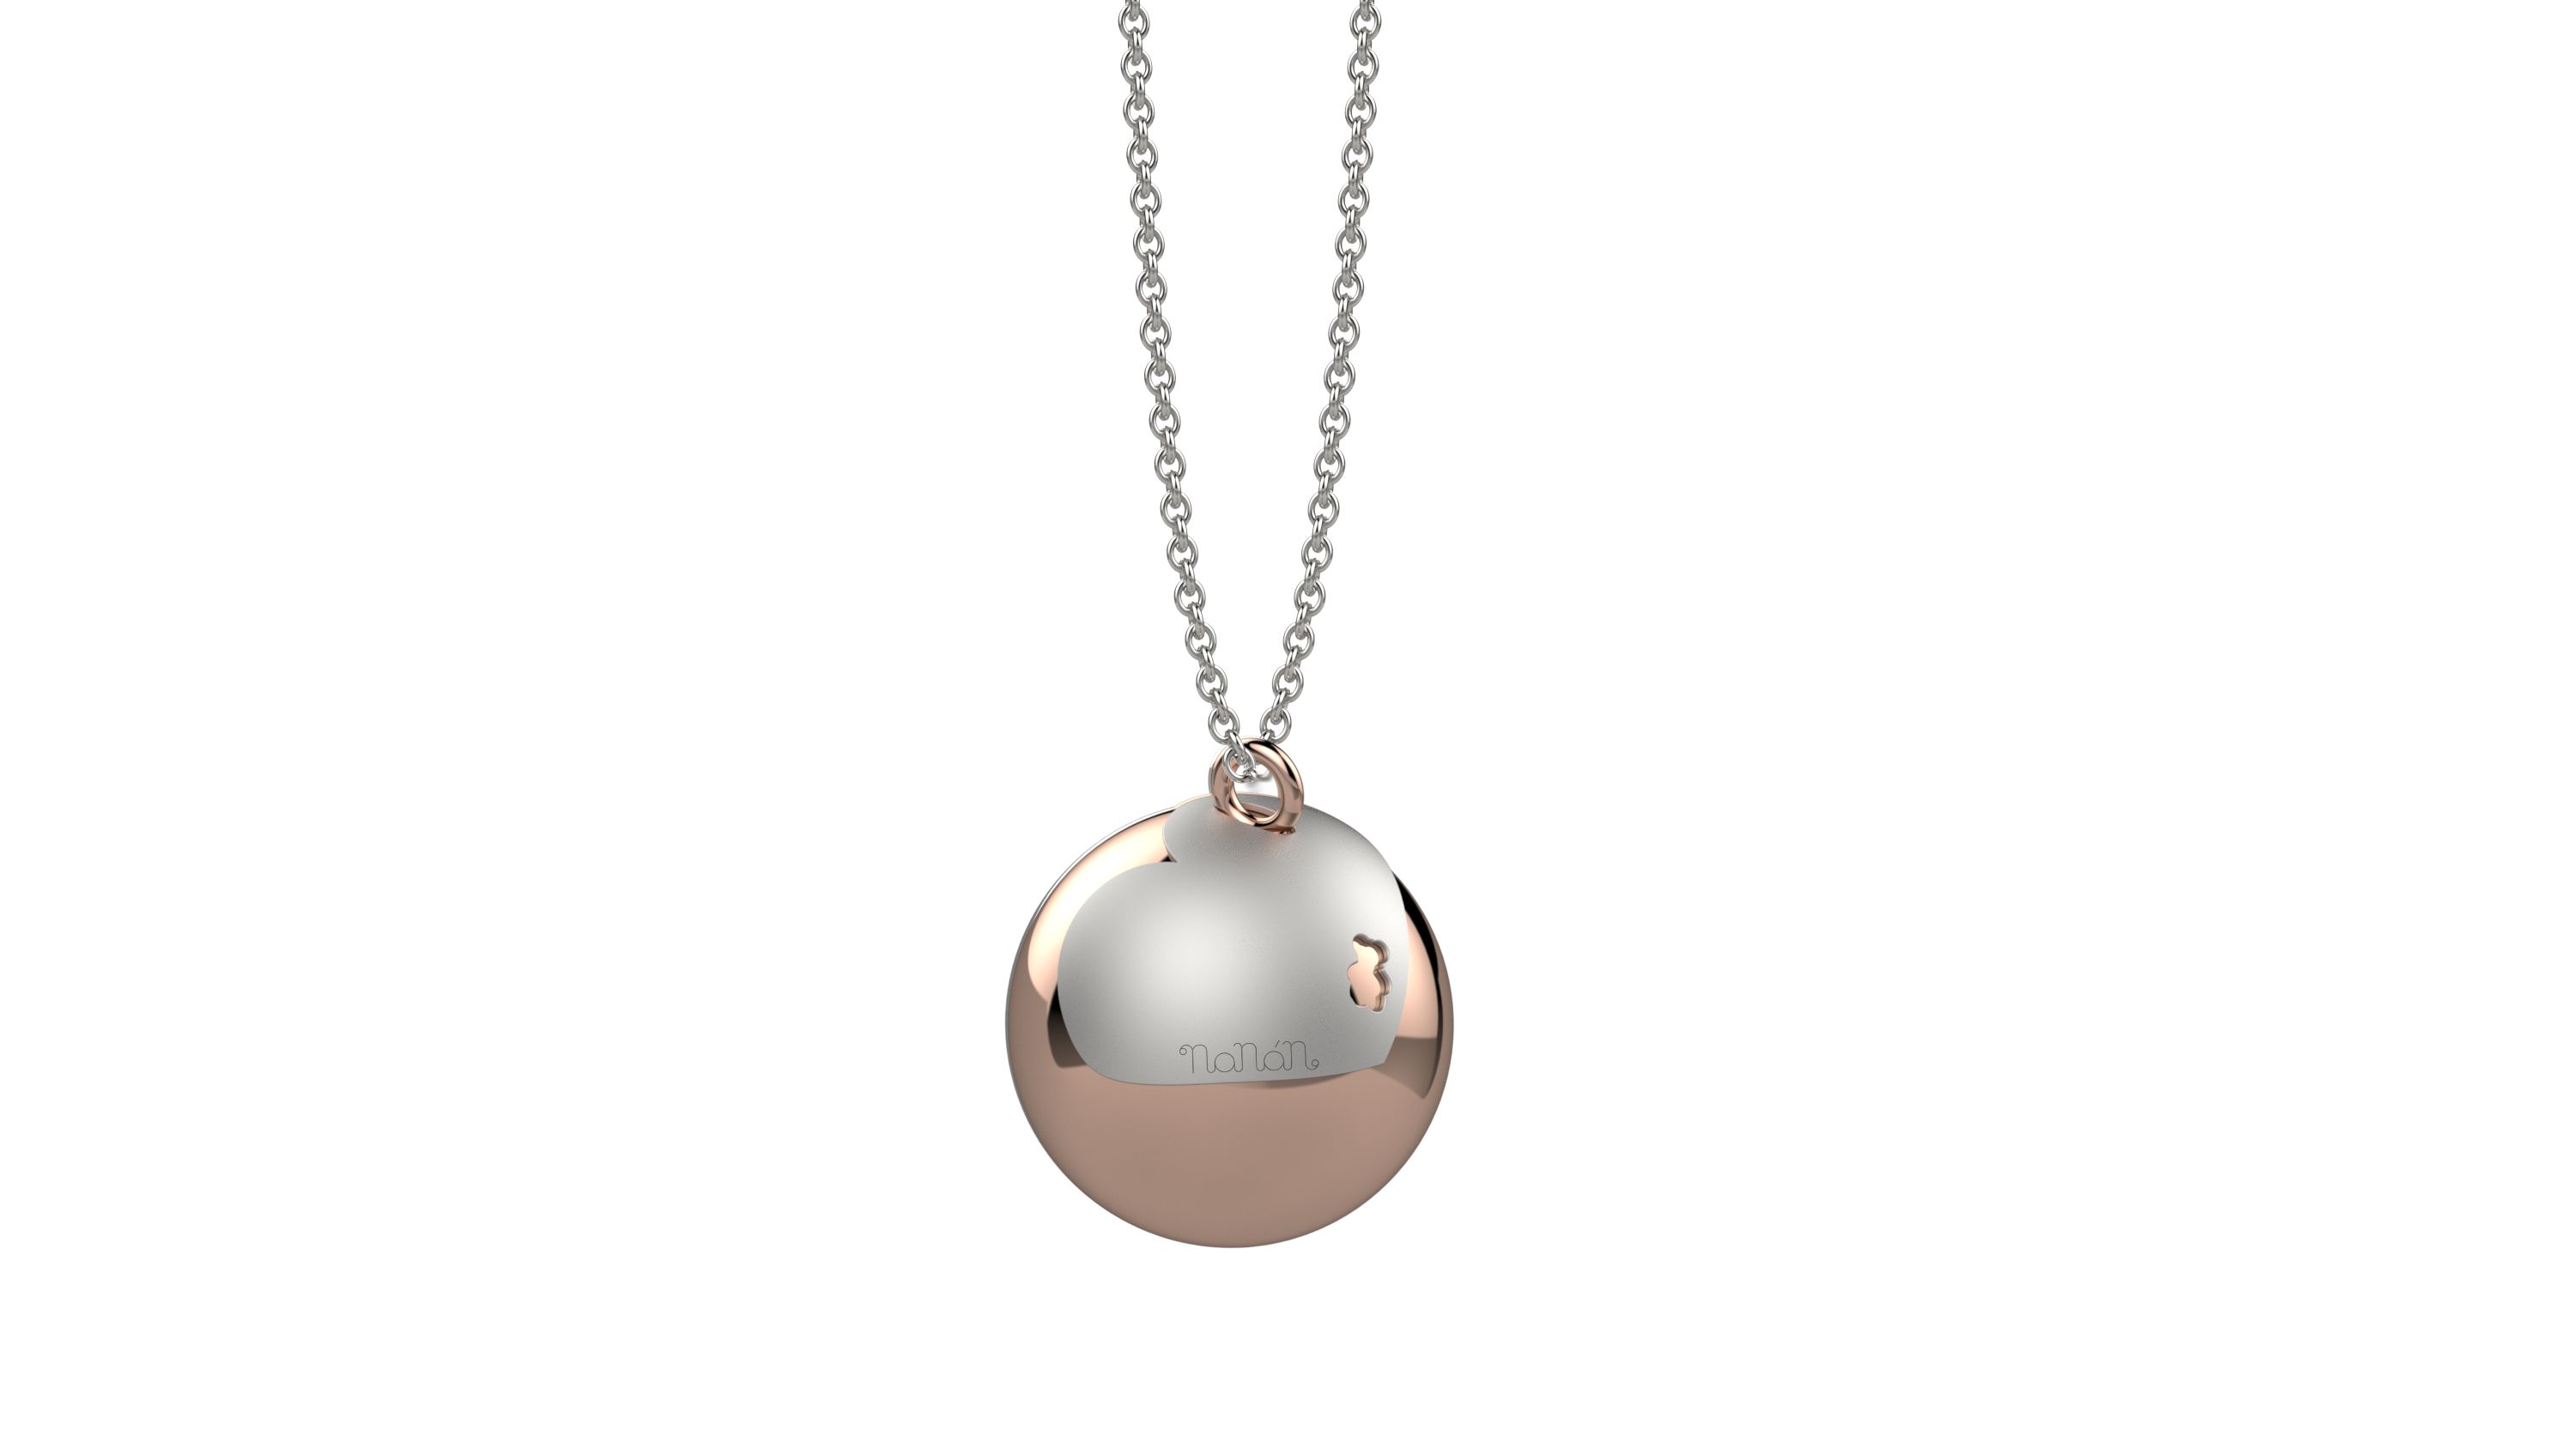 pendente argento 925 con bolas in metallo e catena